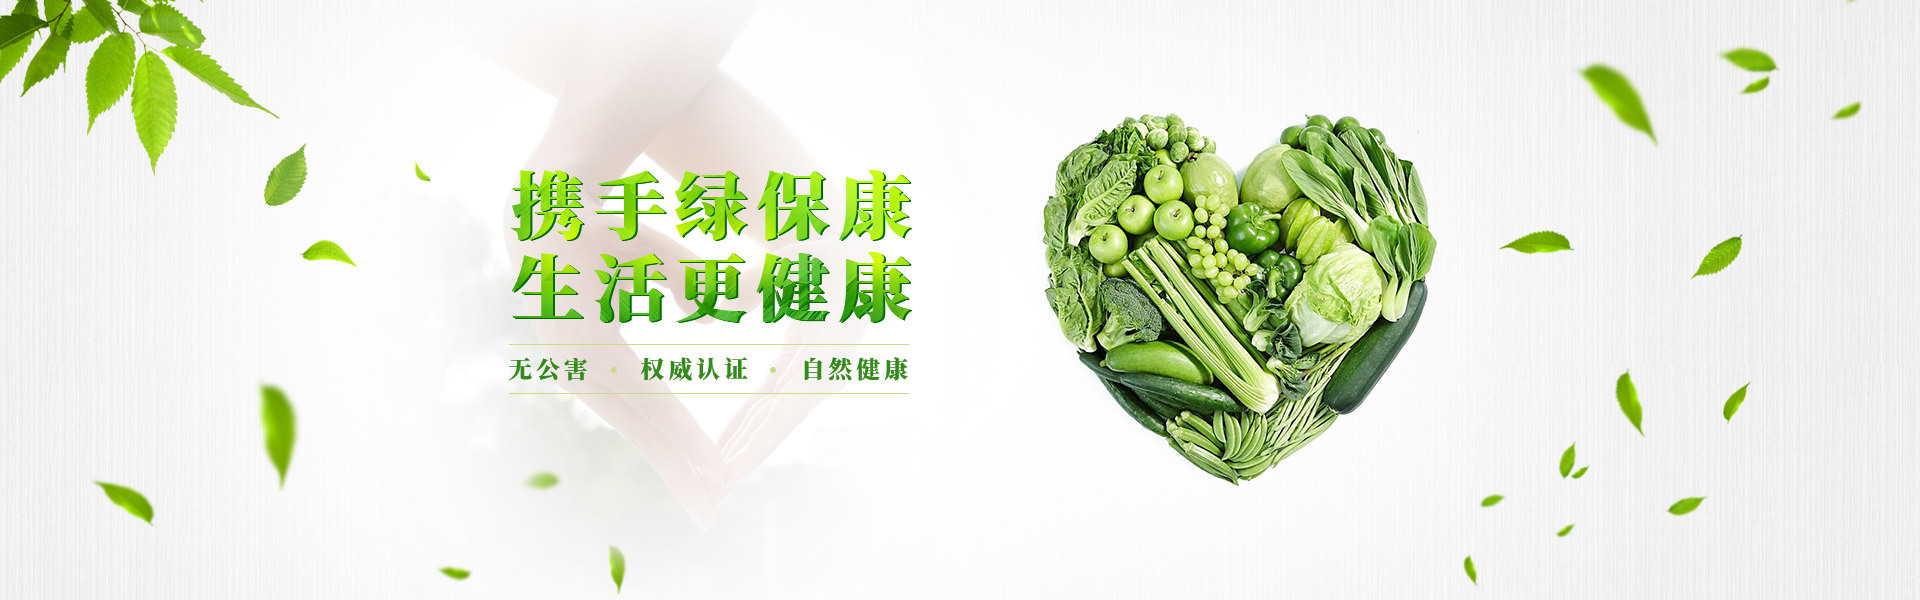 深圳市绿保康餐饮管理有限公司